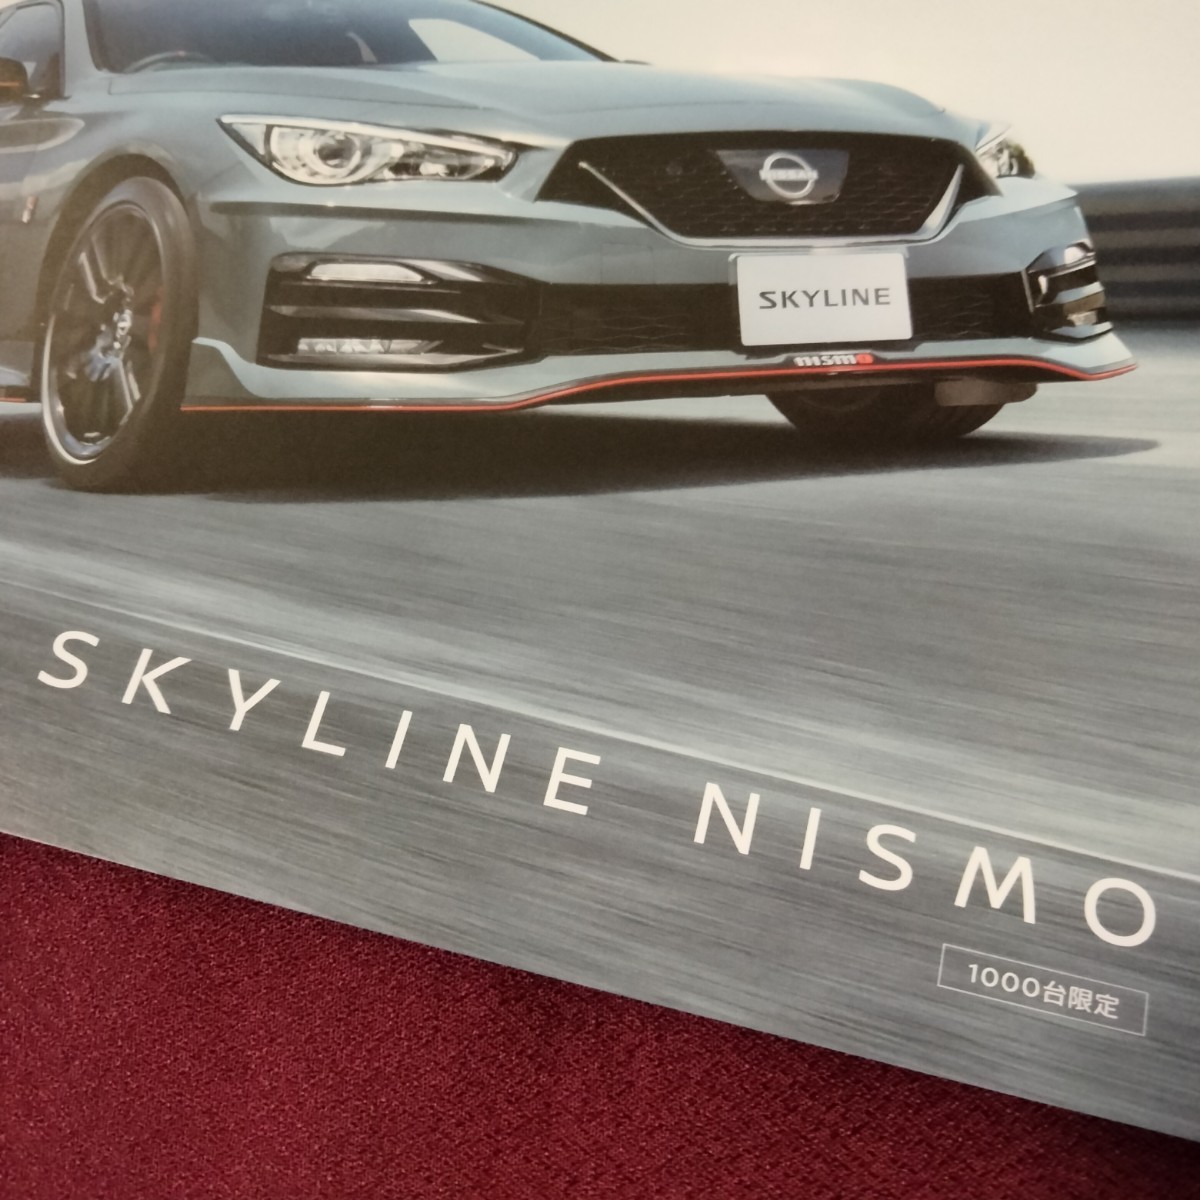  Nissan Skyline каталог Skyline Nismo 1000 автомобилей ограниченного выпуска 11 страница 2023 год 8 месяц выпуск Nissan каталог 